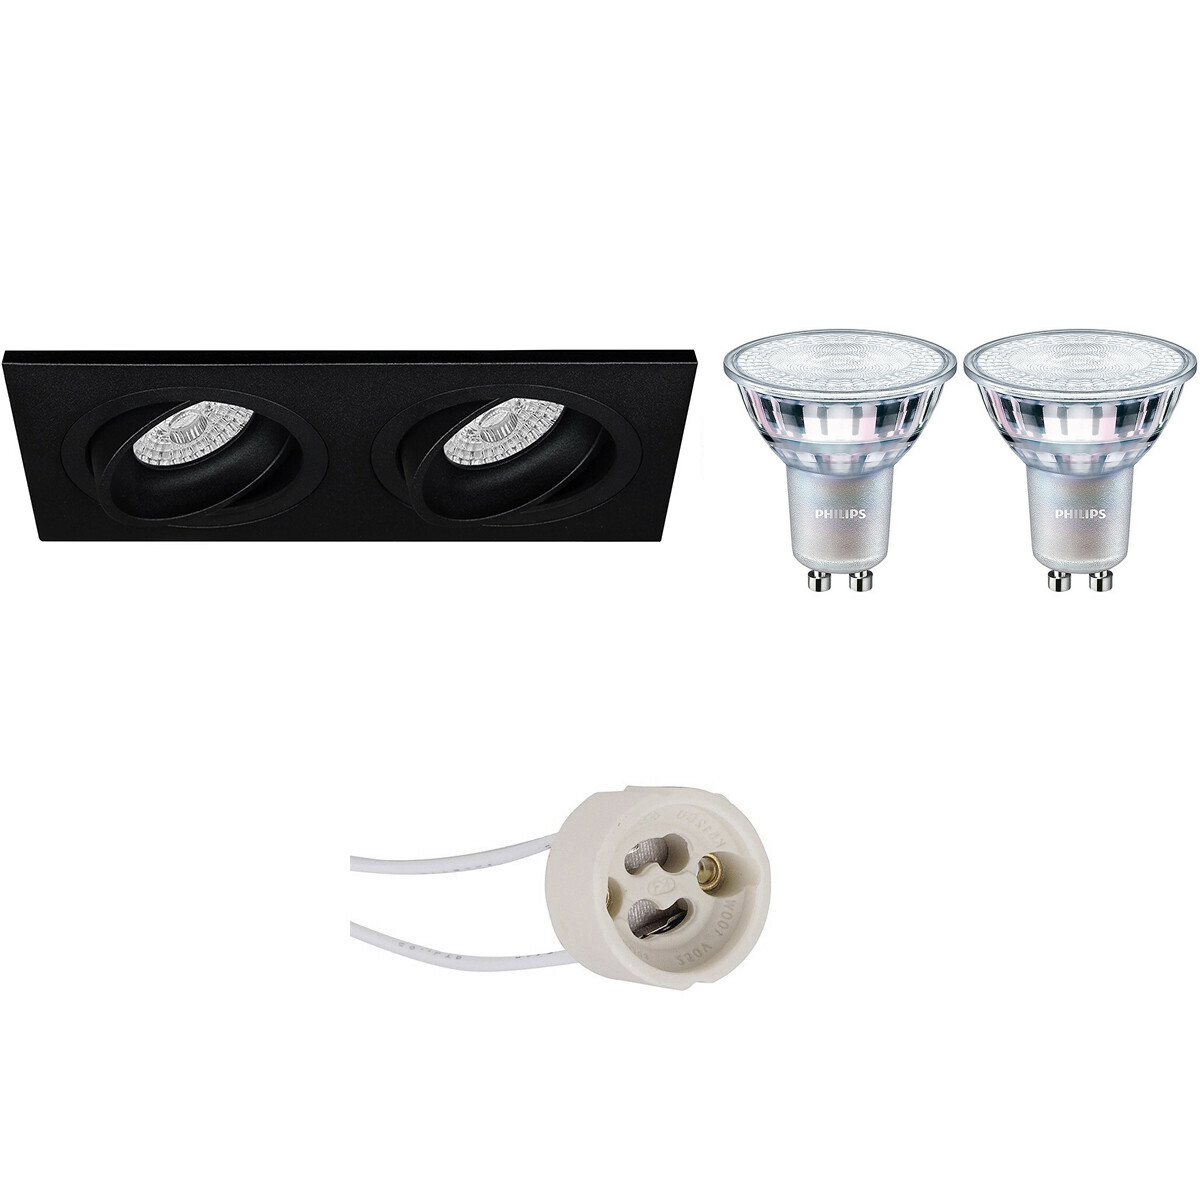 LED Spot Set - Pragmi Borny Pro - GU10 Fitting - Inbouw Rechthoek Dubbel - Mat Zwart - Kantelbaar - 